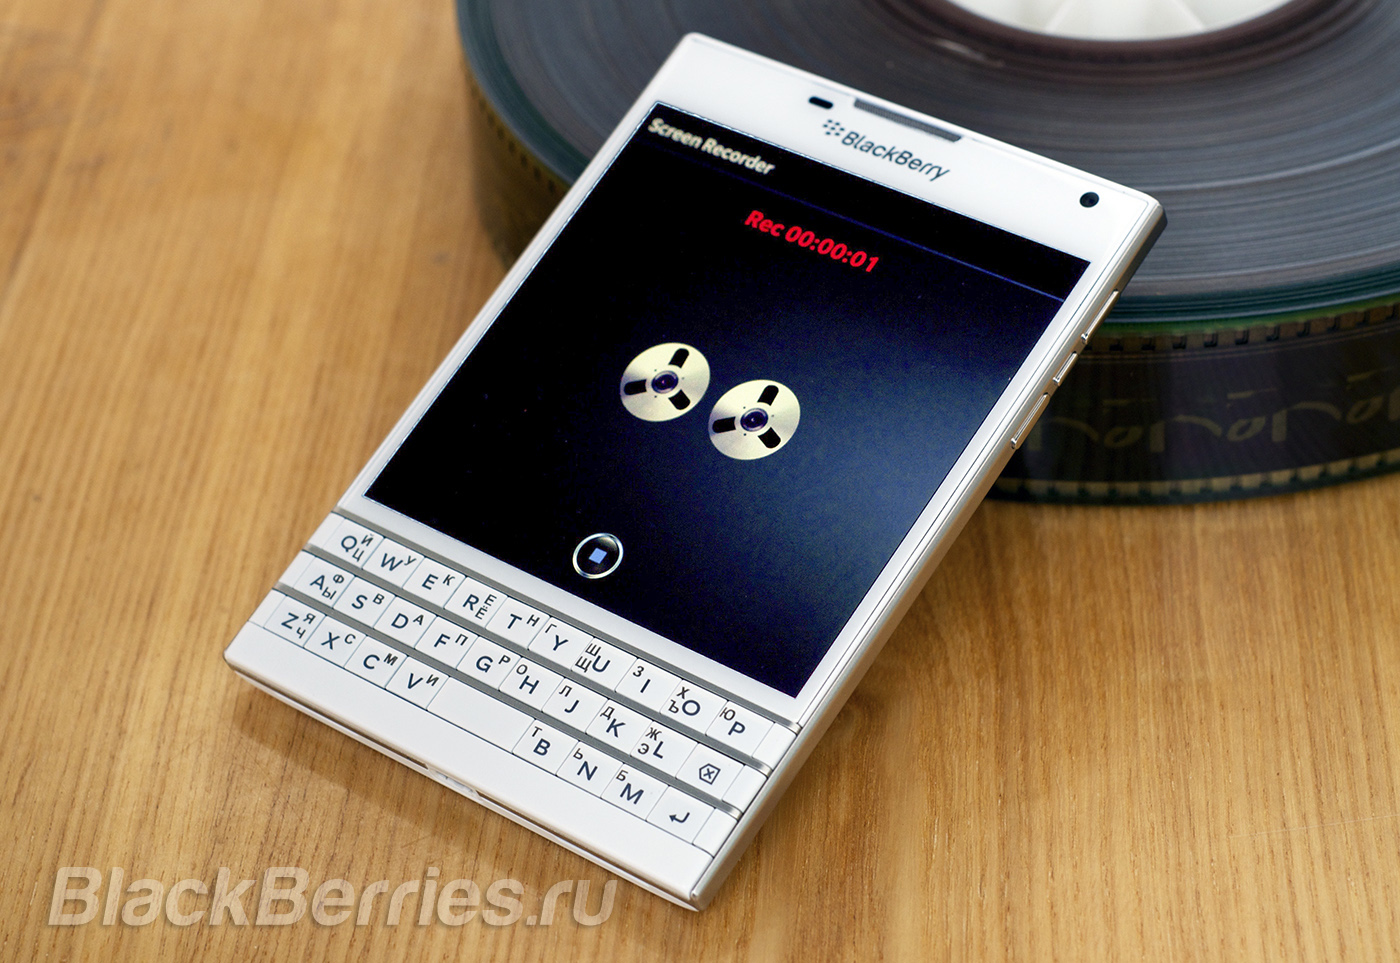 BlackBerry-Passport-App-23-05-24